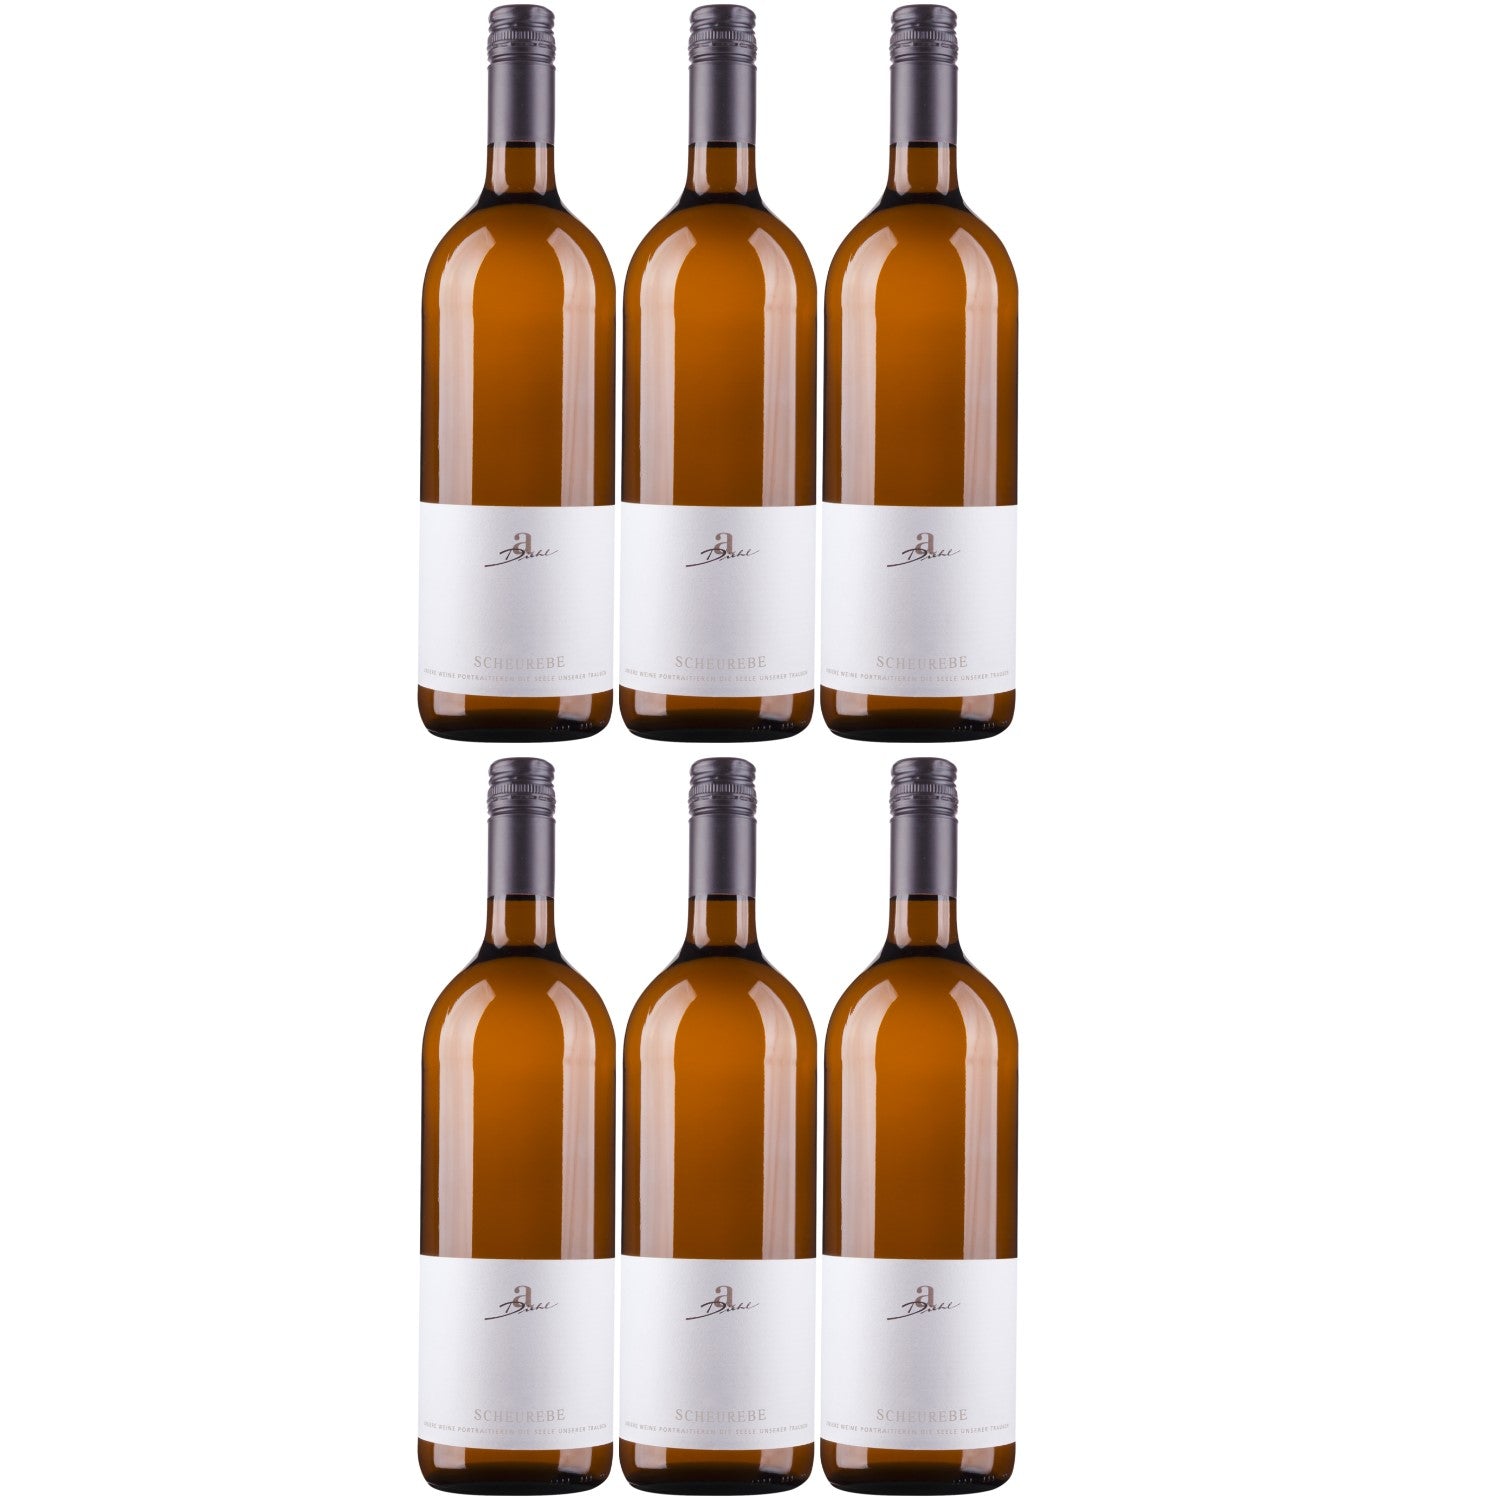 A. Diehl Scheurebe Weißwein Wein lieblich QbA Deutschland (6 x 1.0l) - Versanel -